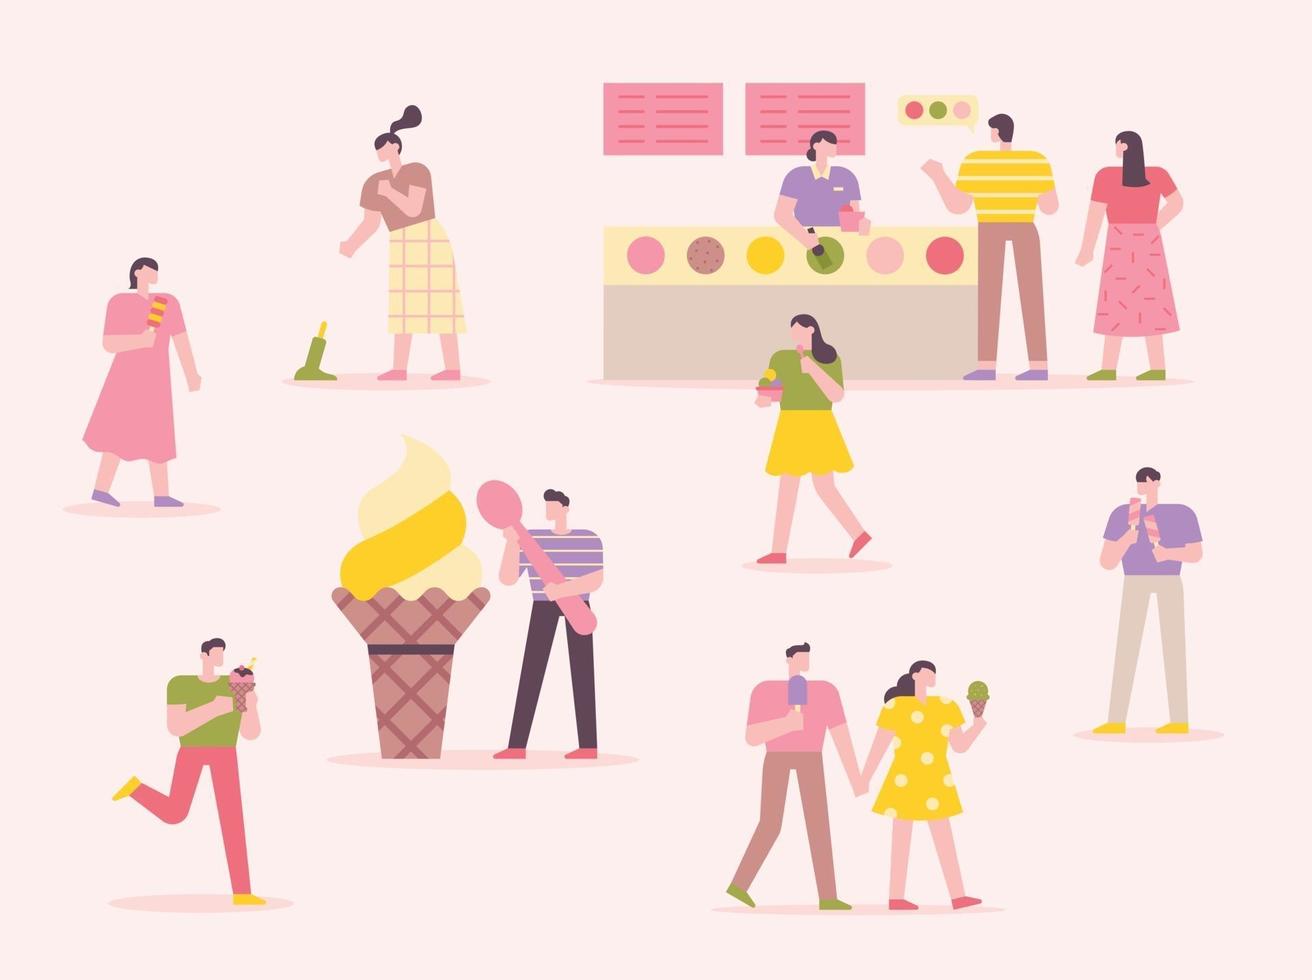 muitas pessoas estão tomando sorvete. sorveteria com fundo rosa. ilustração em vetor mínimo estilo design plano.